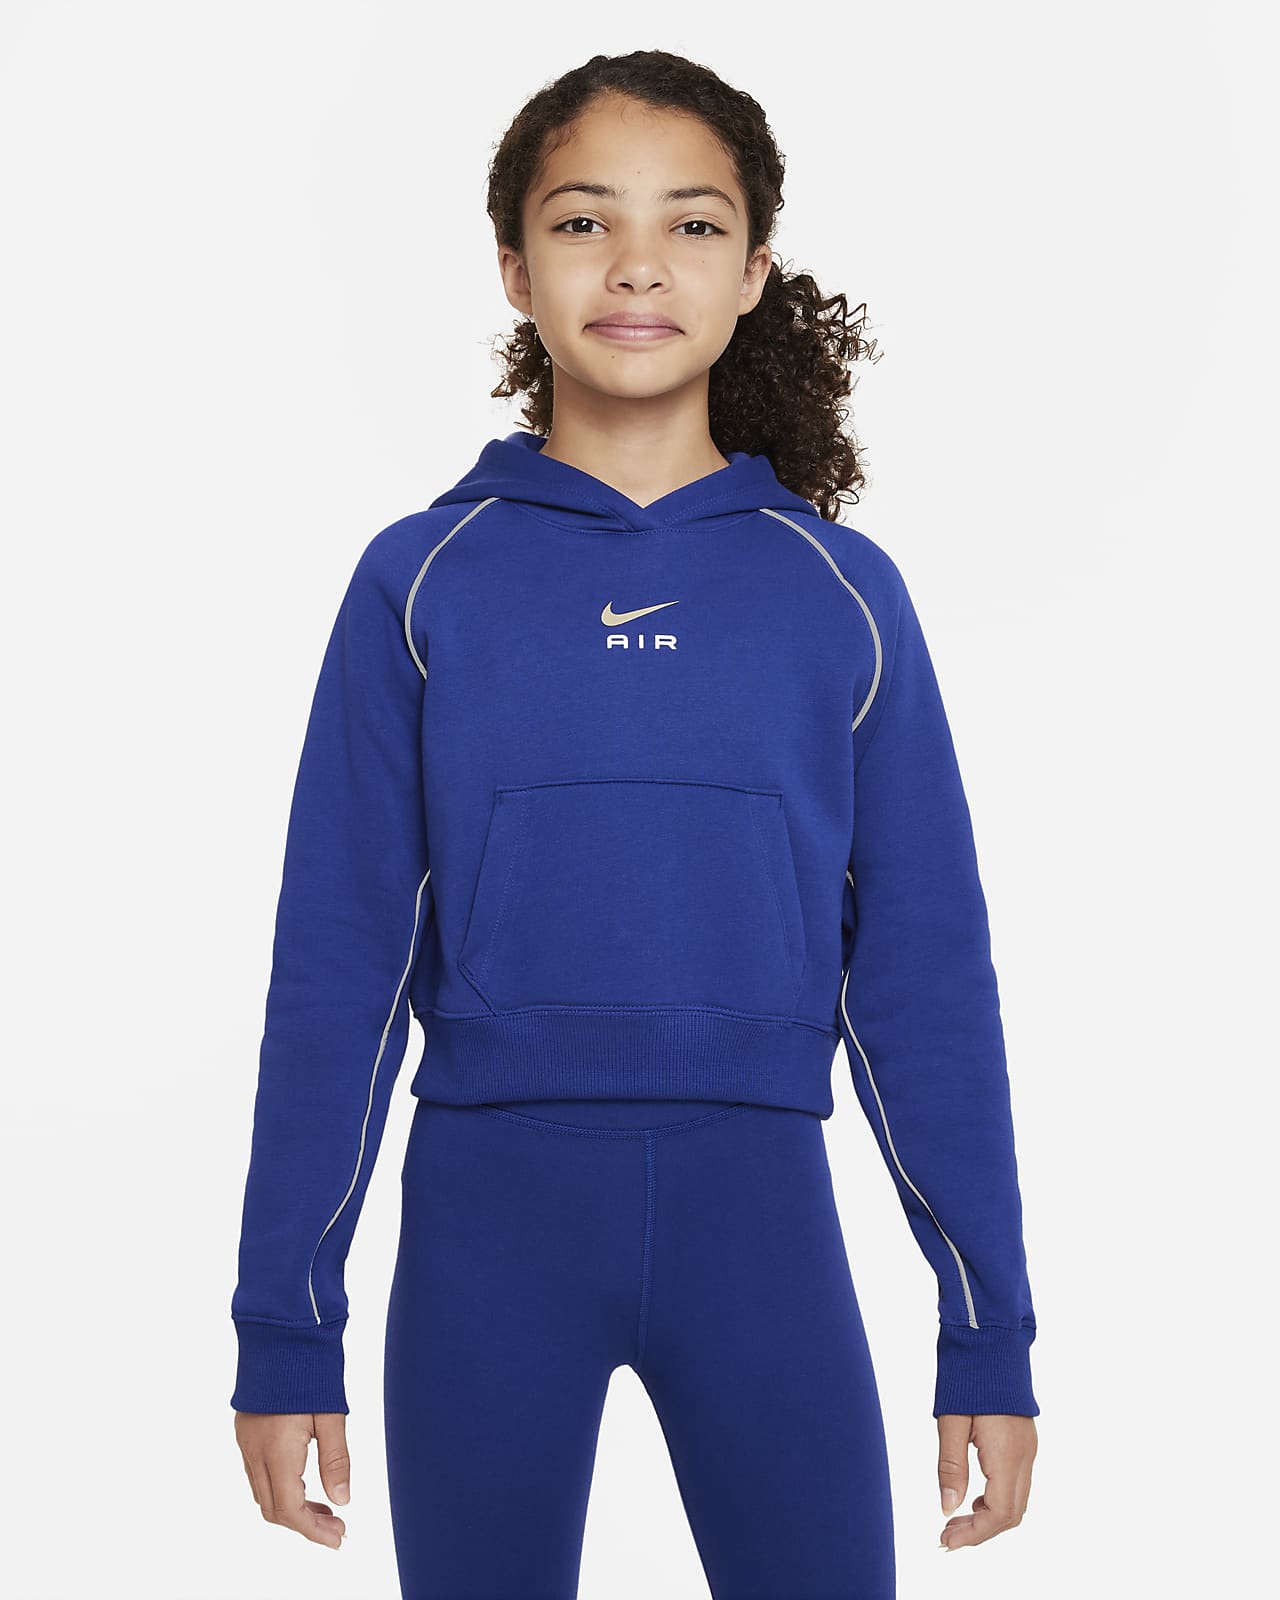 เสื้อมีฮู้ดเอวลอยผ้าเฟรนช์เทรีเด็กโต Nike Air (หญิง)